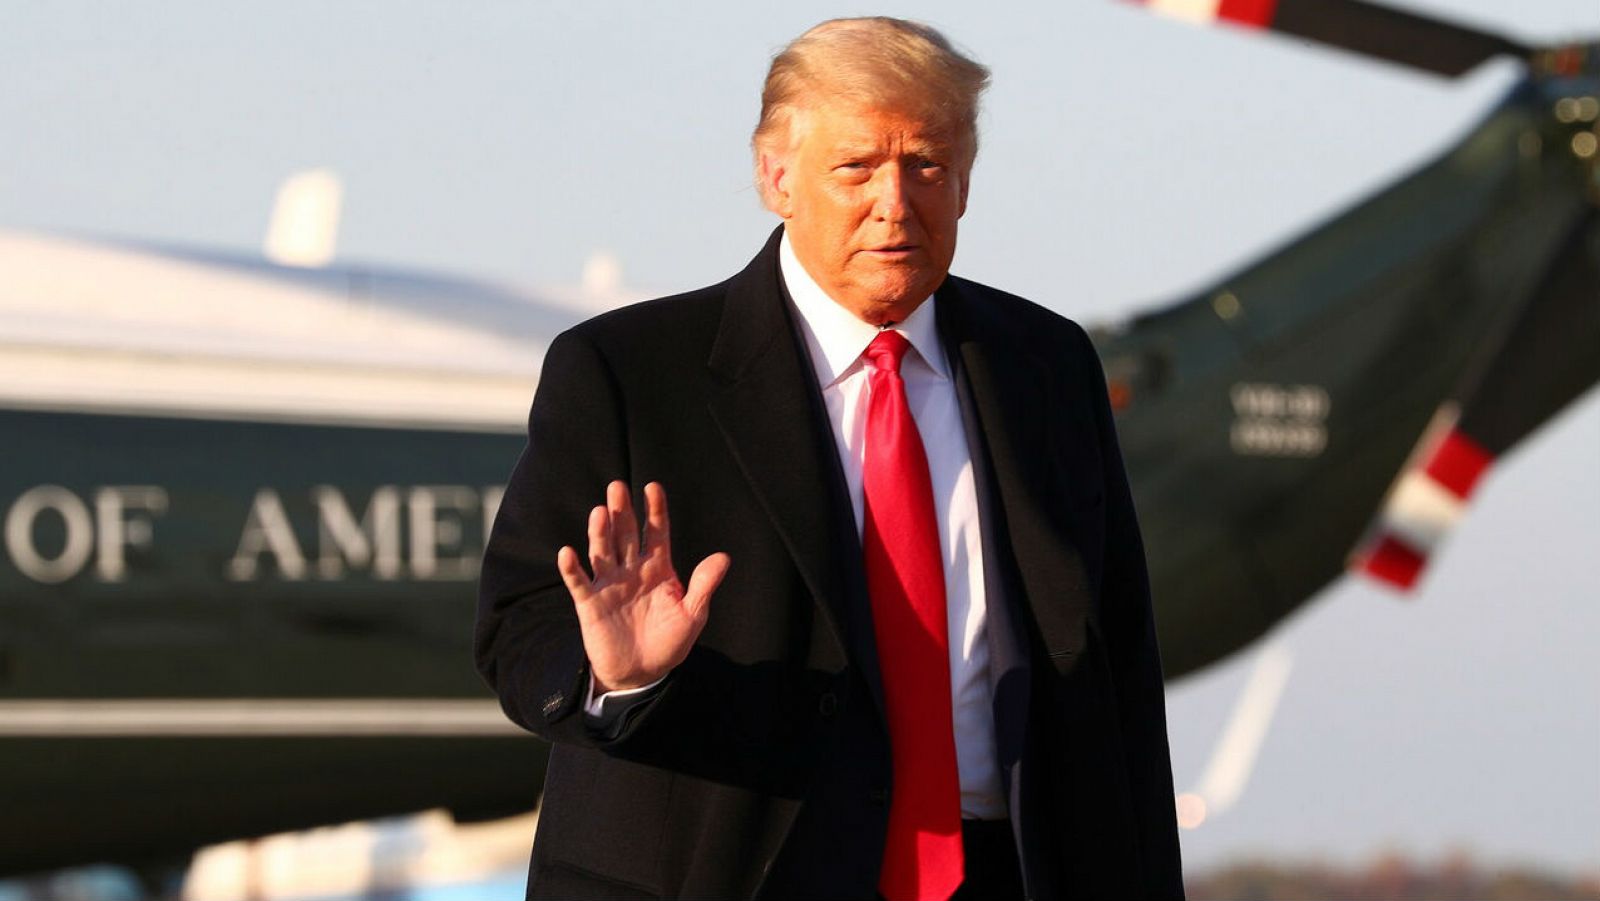 El presidente de EE. UU., Donald Trump, saluda antes de abordar el Air Force One antes de un viaje de campaña, en la base conjunta Andrews, Maryland, EE. UU.